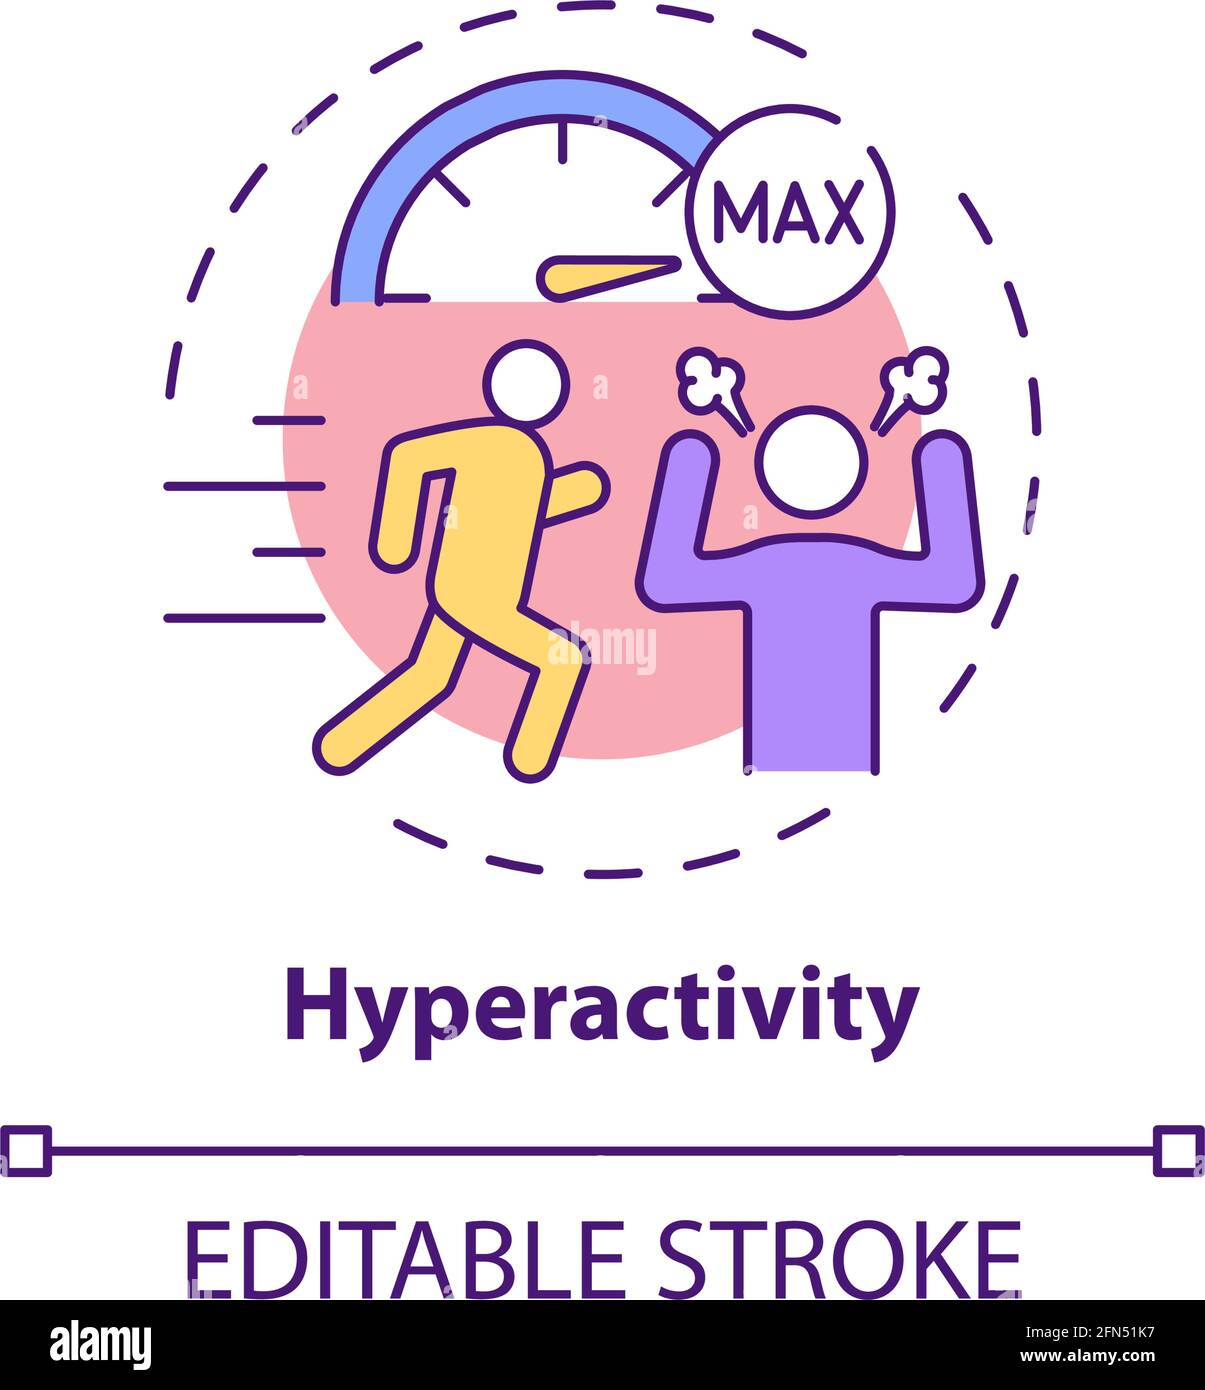 Hyperactivity concept icon Stock Vector